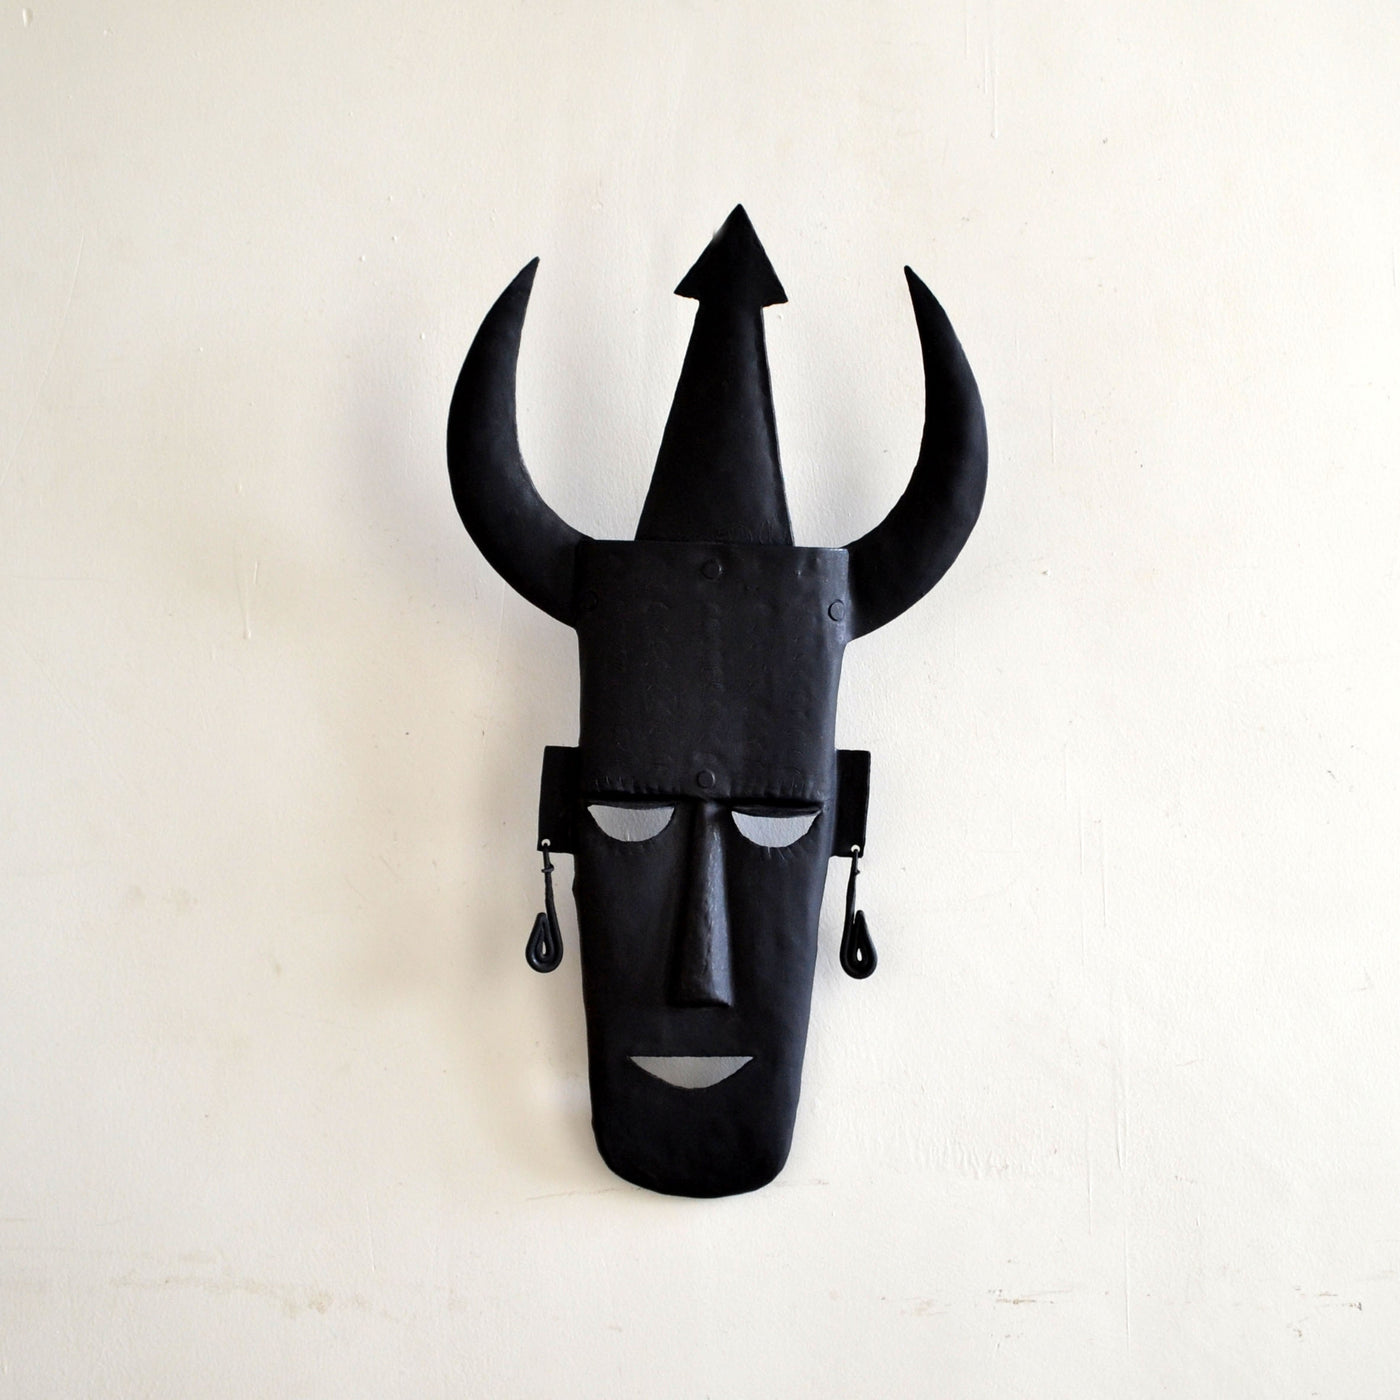 Chinhhari arts Wrought Iron Tribal Mask - Chinhhari Arts store